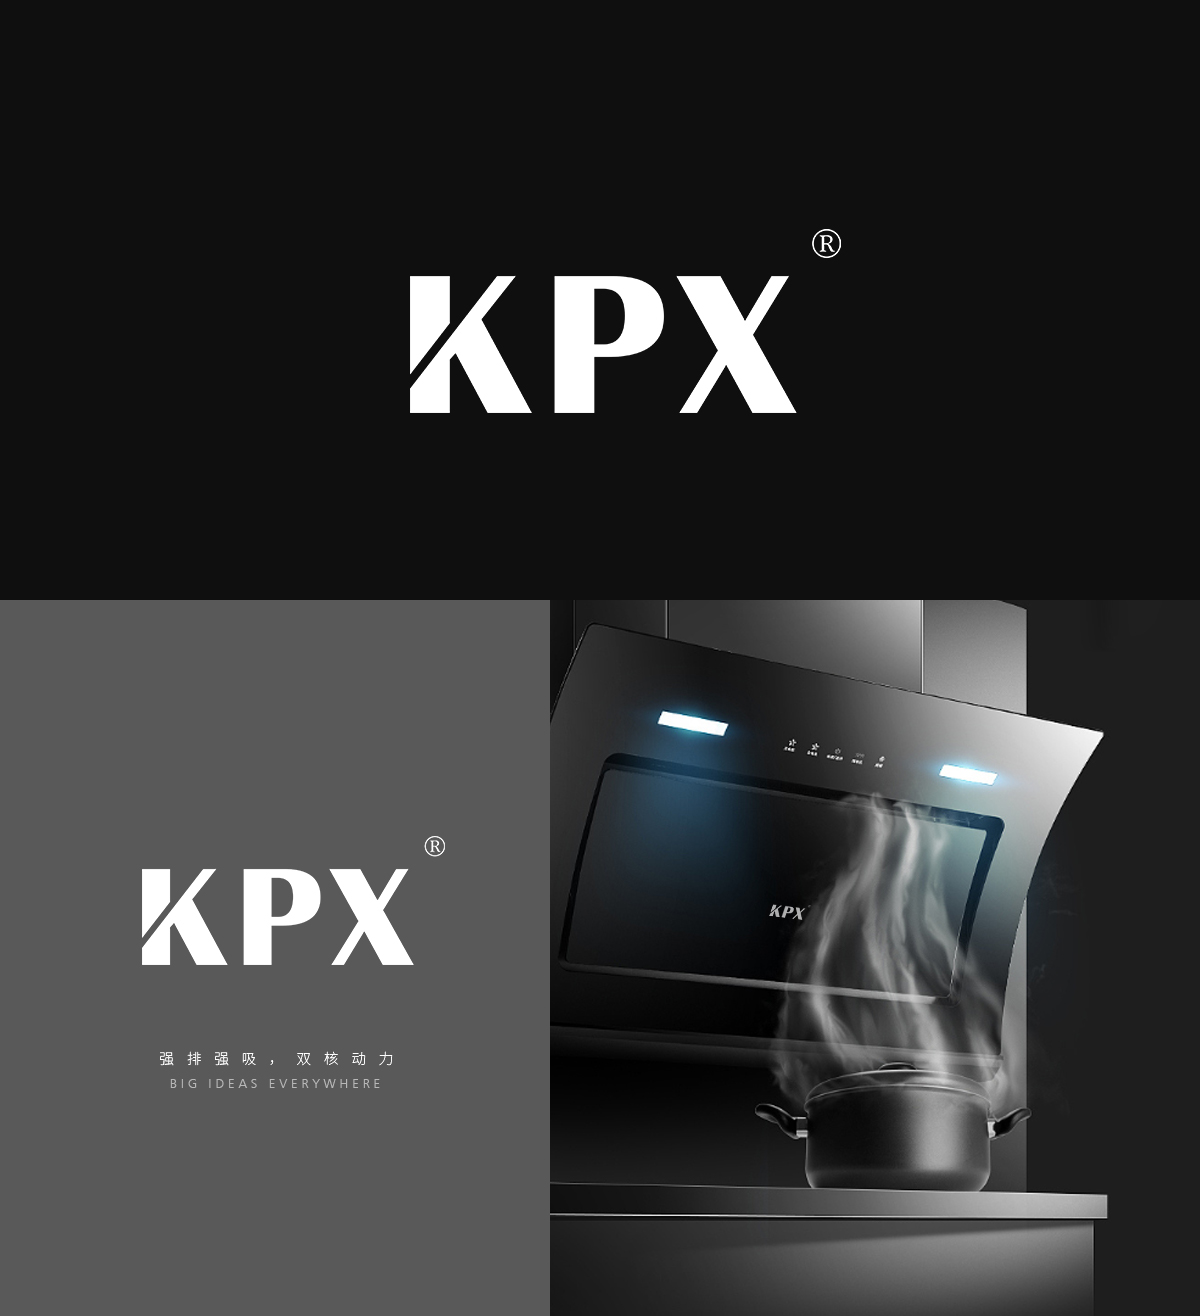 KPX